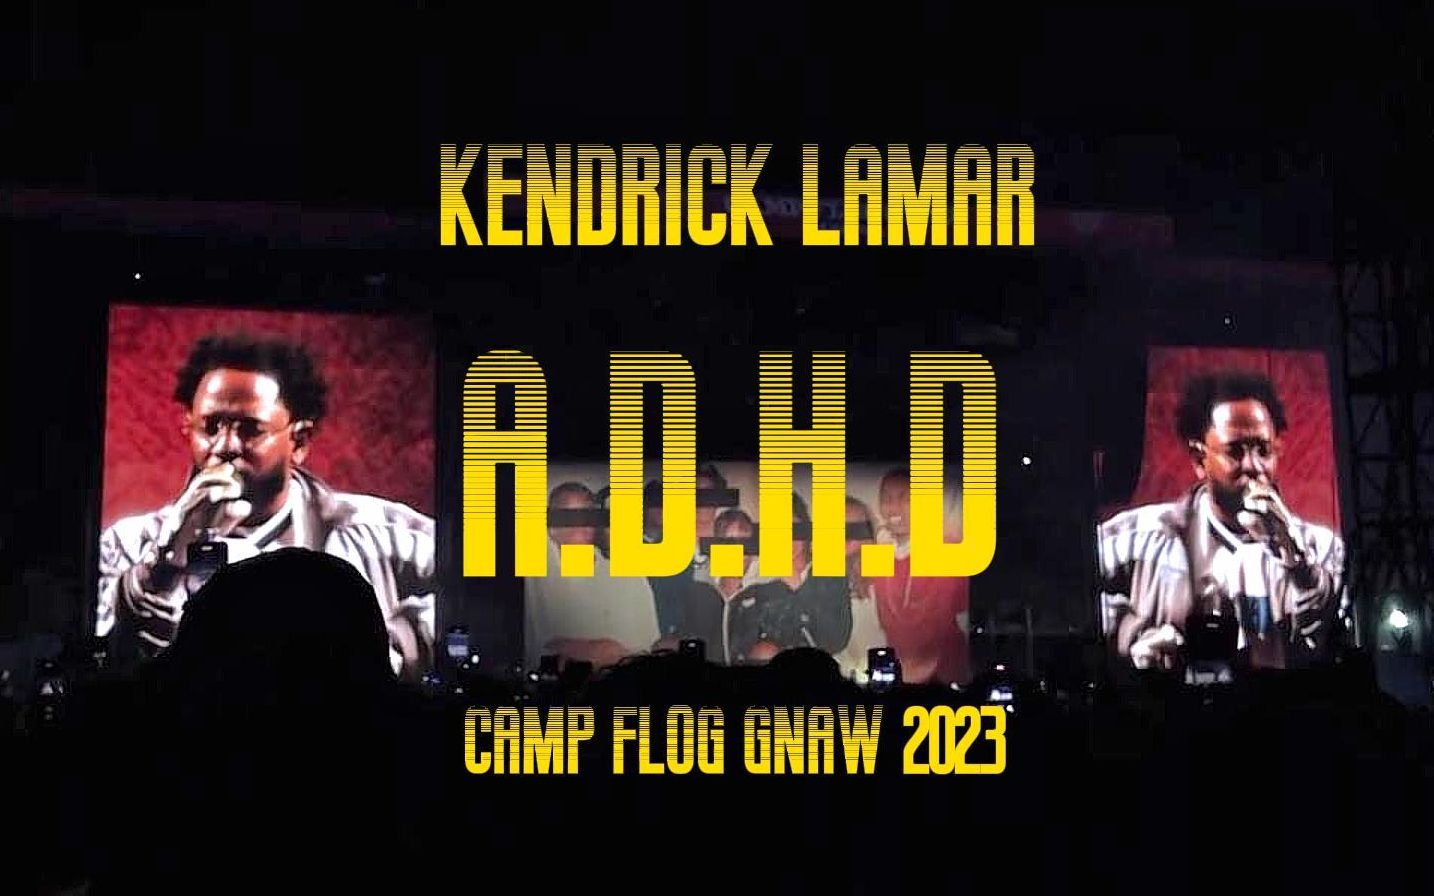 Kendrick Lamar 最新音乐节现场表演《A.D.H.D》#Camp Flog Gnaw 2023